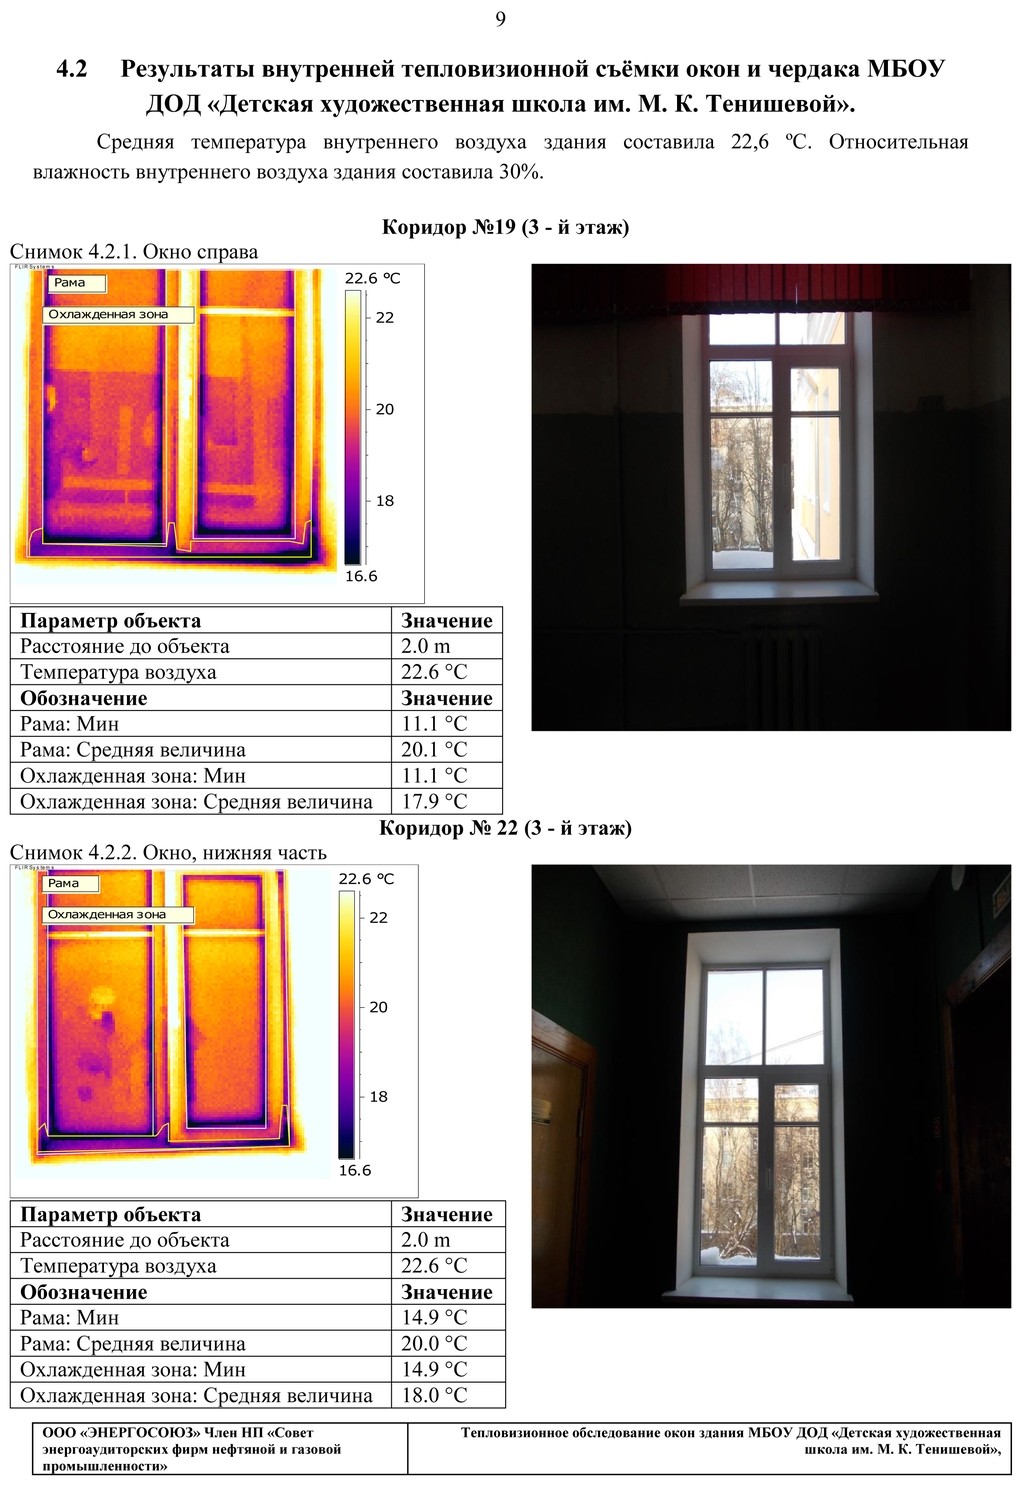 Тепловизионное обследование окон зданий, руб/окно